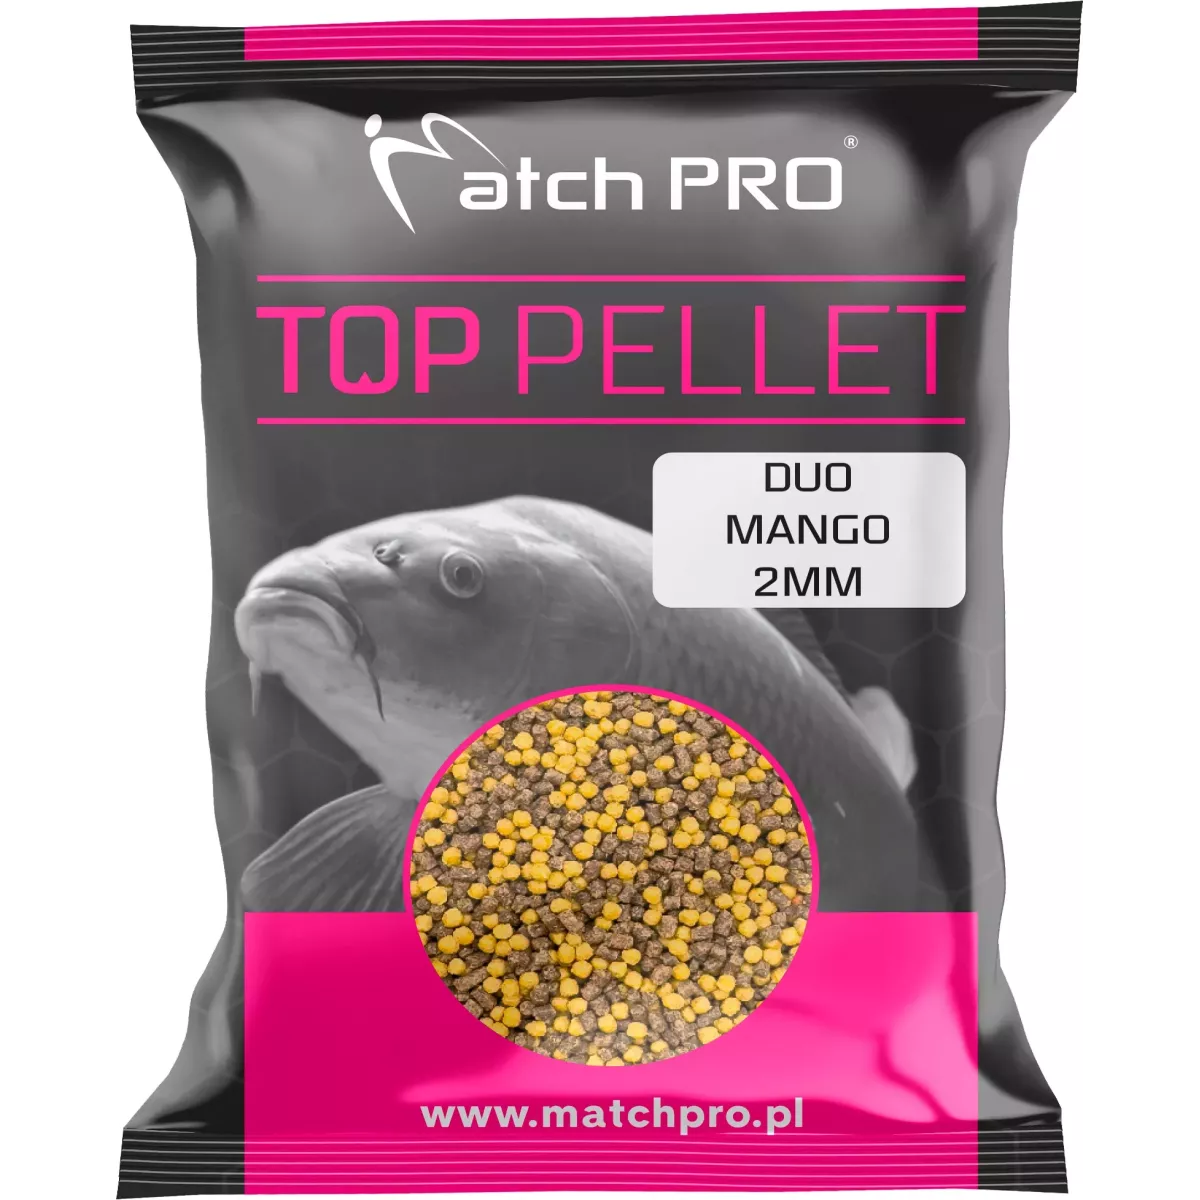 Pellet MatchPro TOP 2mm - DUO MANGO